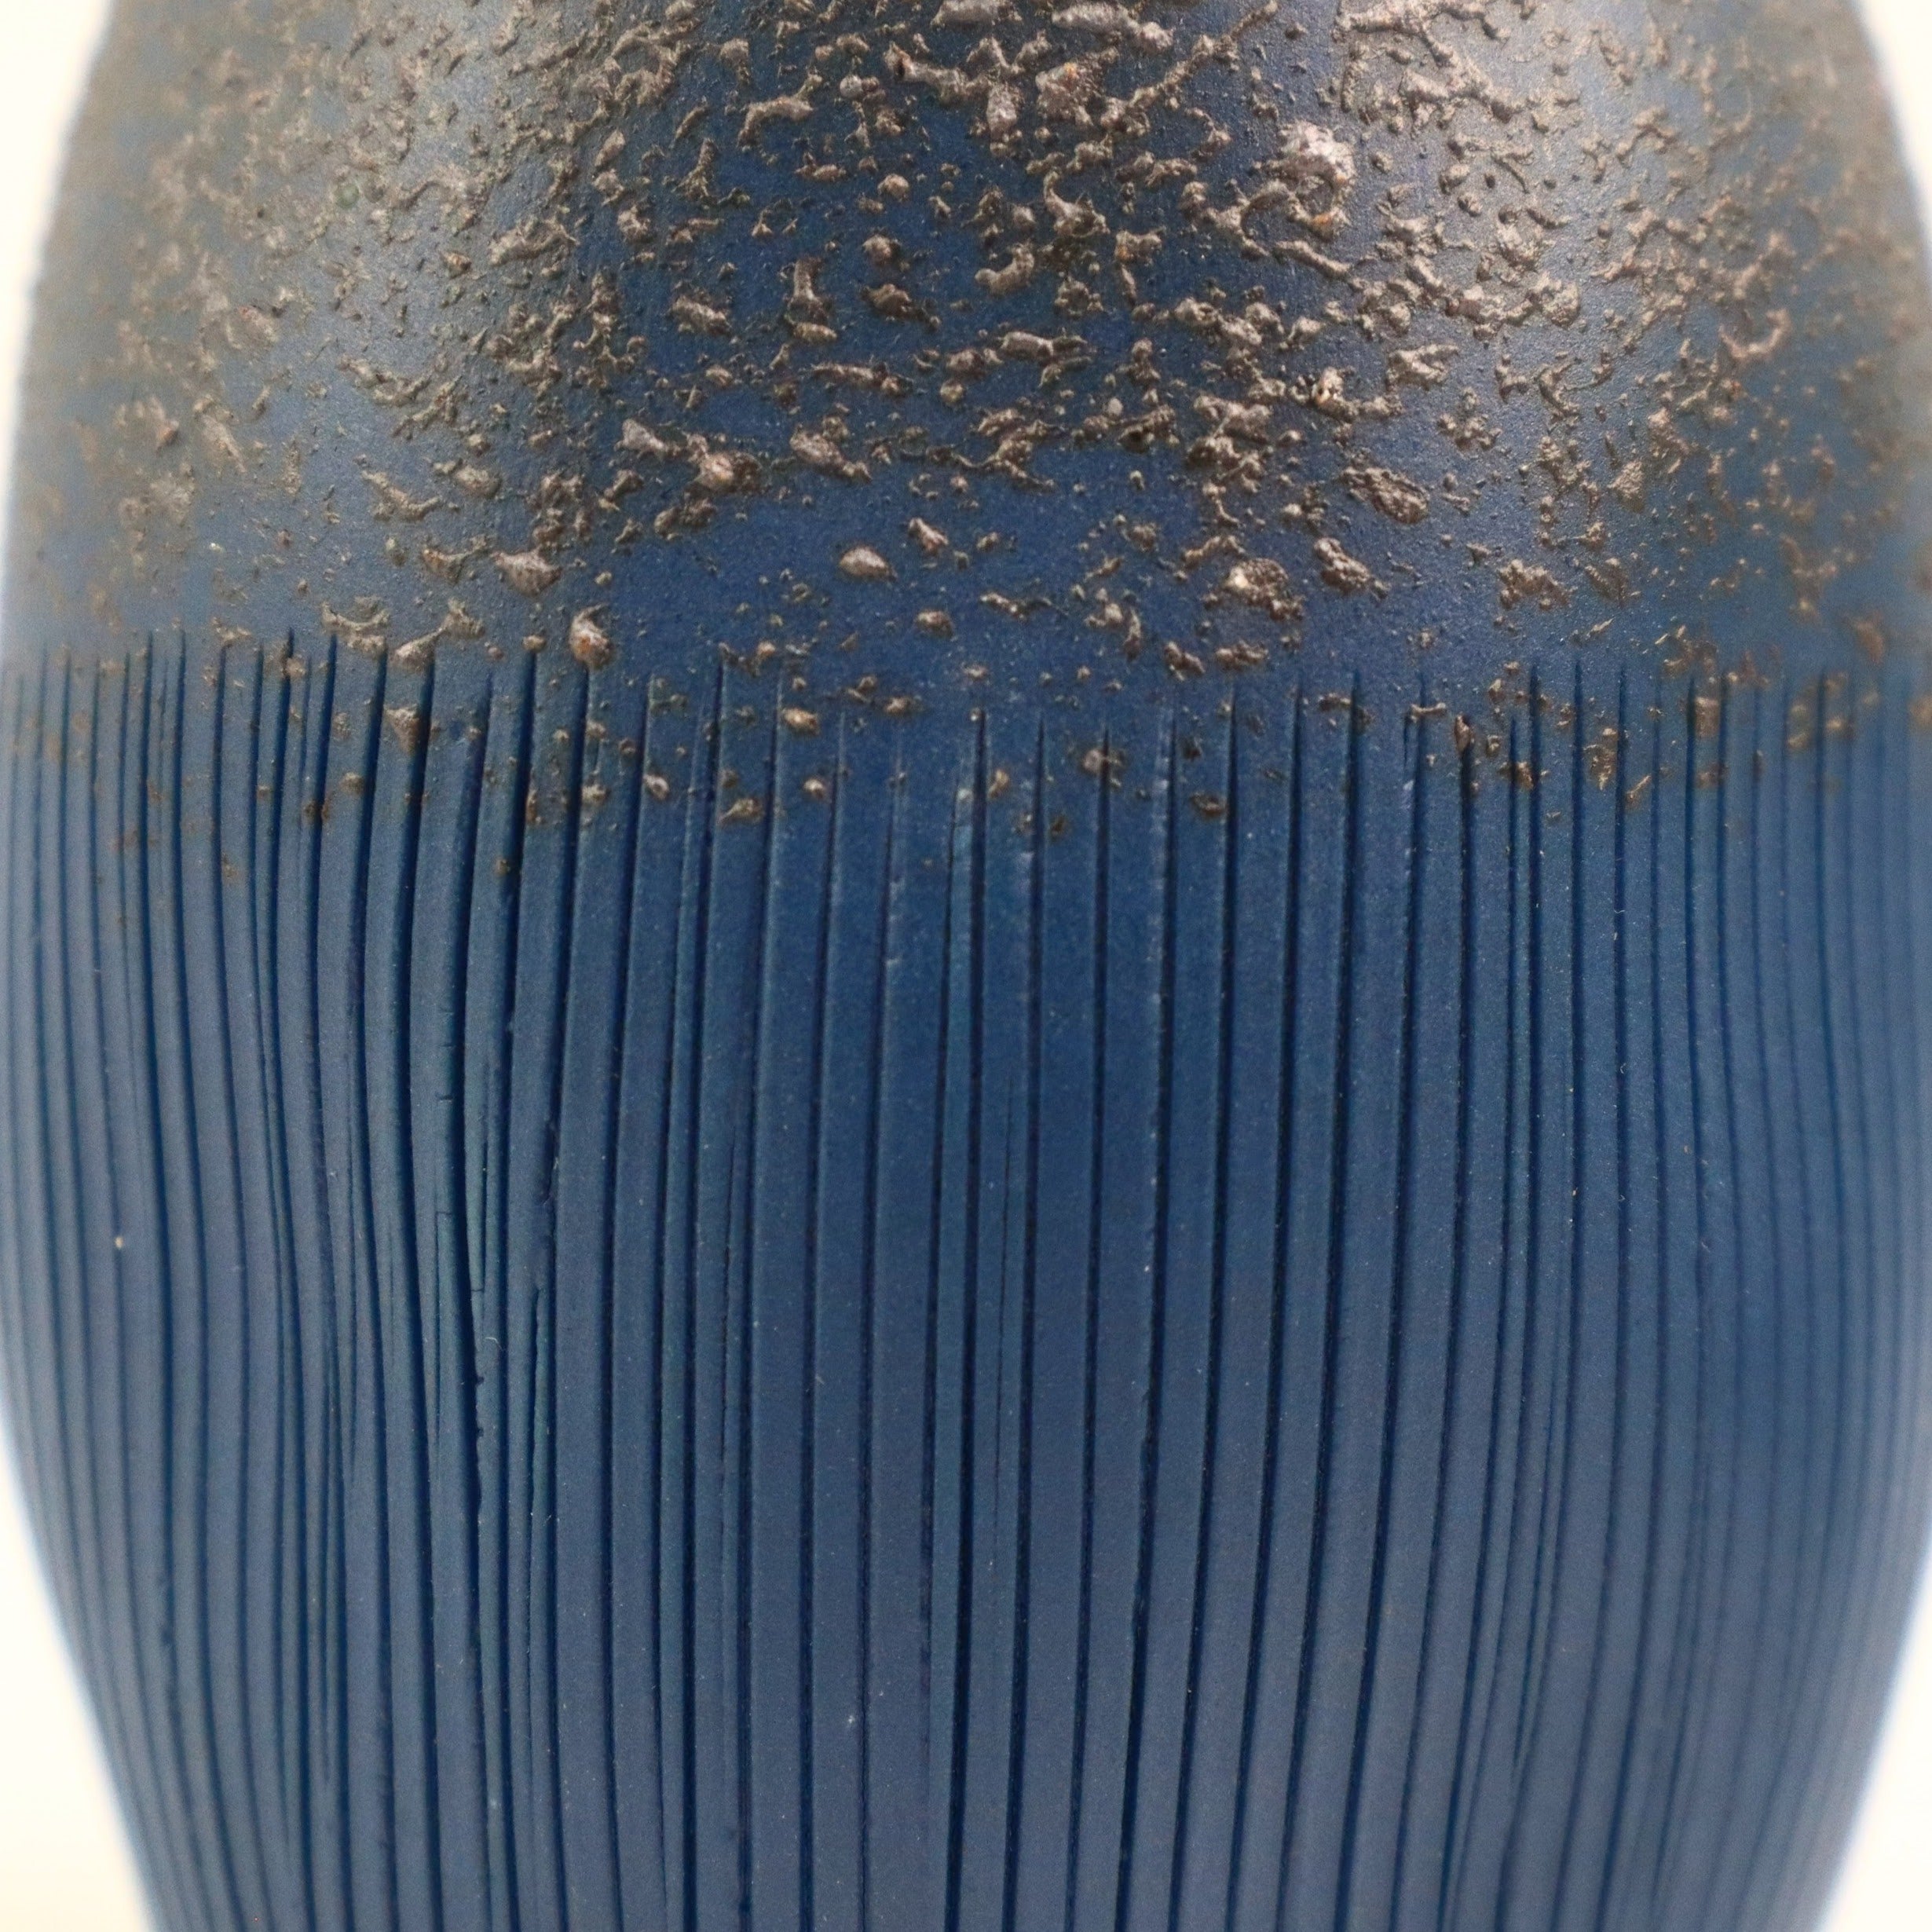 Cucumis Blue Speckle Vase